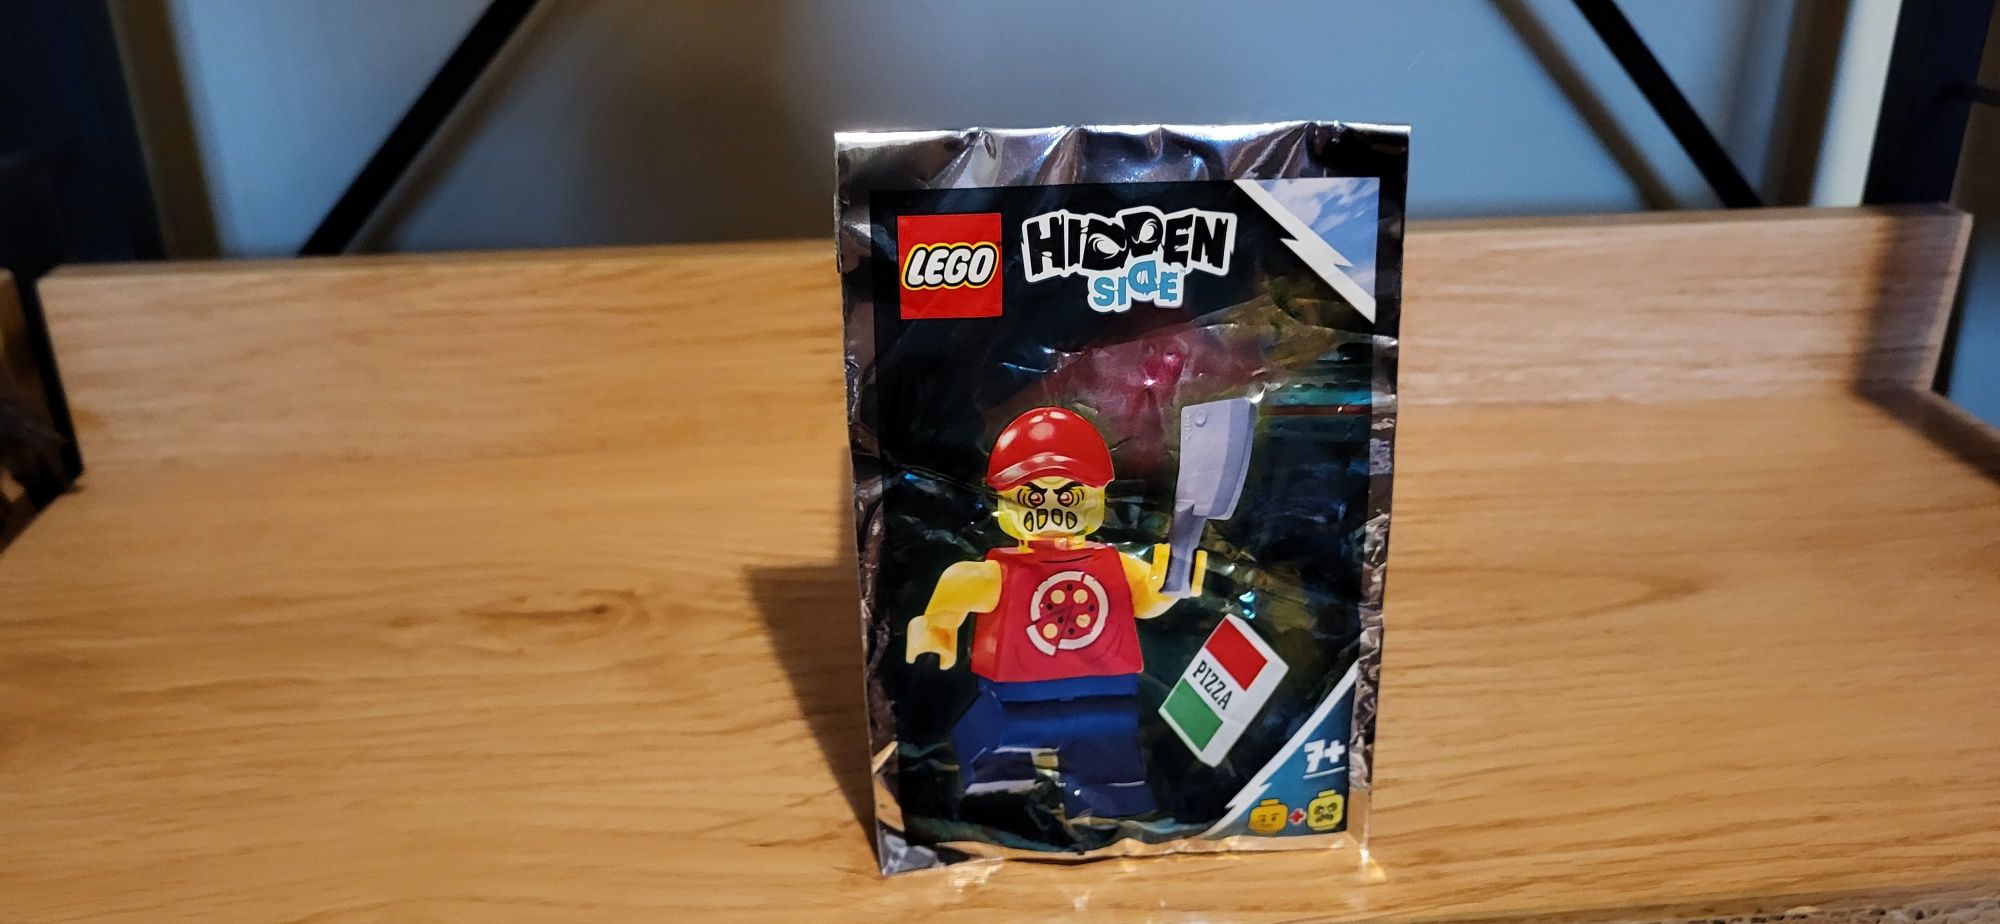 Lego Hidden Side 791902 Opętany dostawca pizzy saszetka klocki